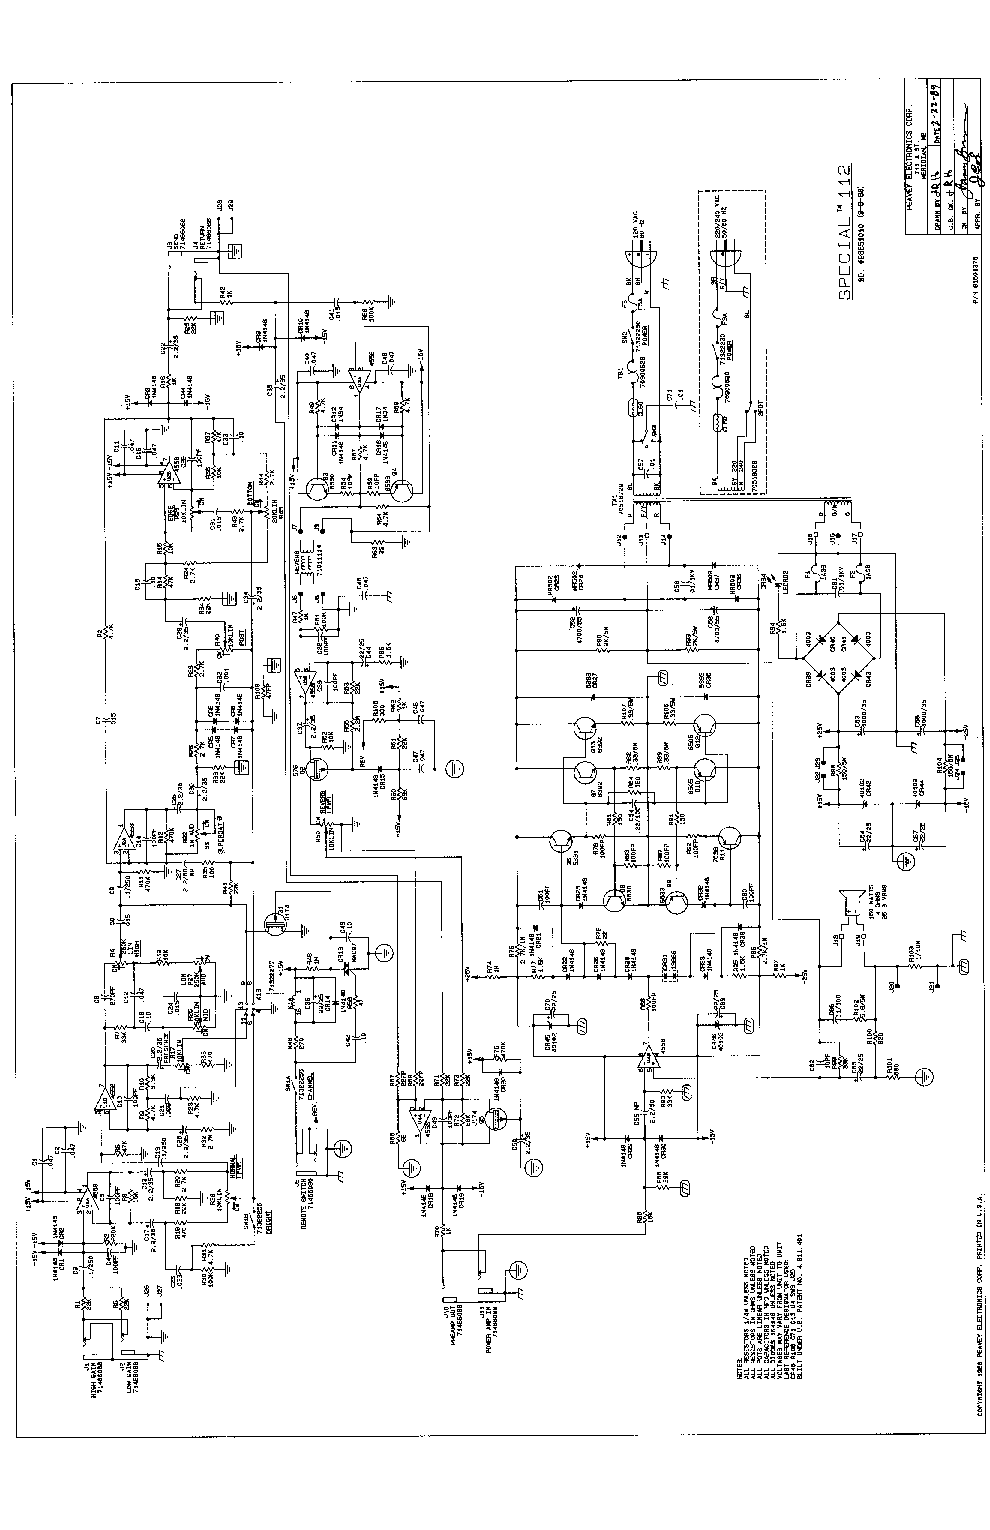 peavey xr 600c wiring diagram